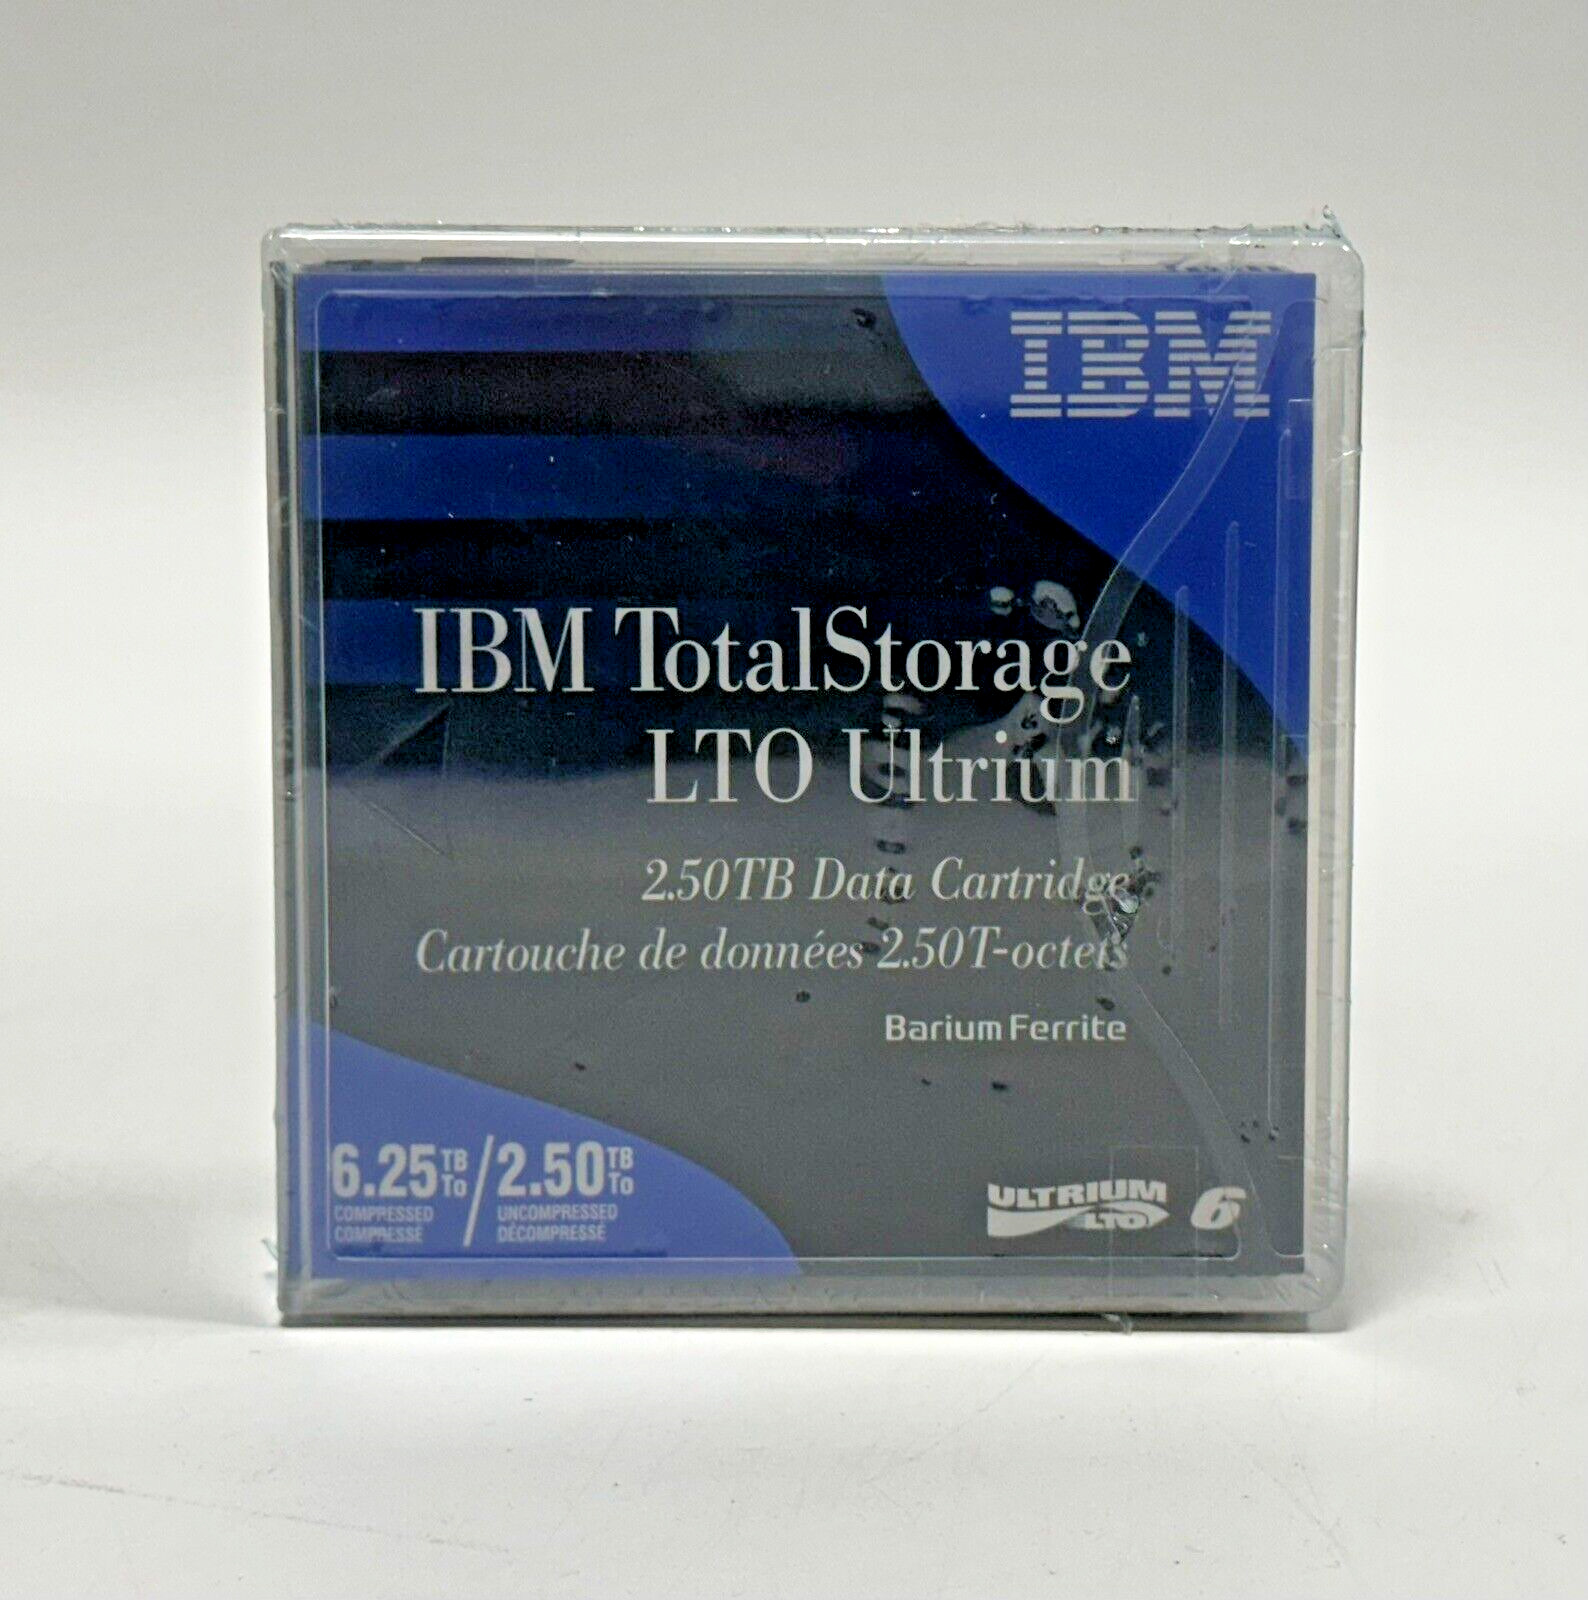 LOT OF 5 IBM 00V7590 LTO Ultrium 2.5TB Barium Ferrite Data Cartridge